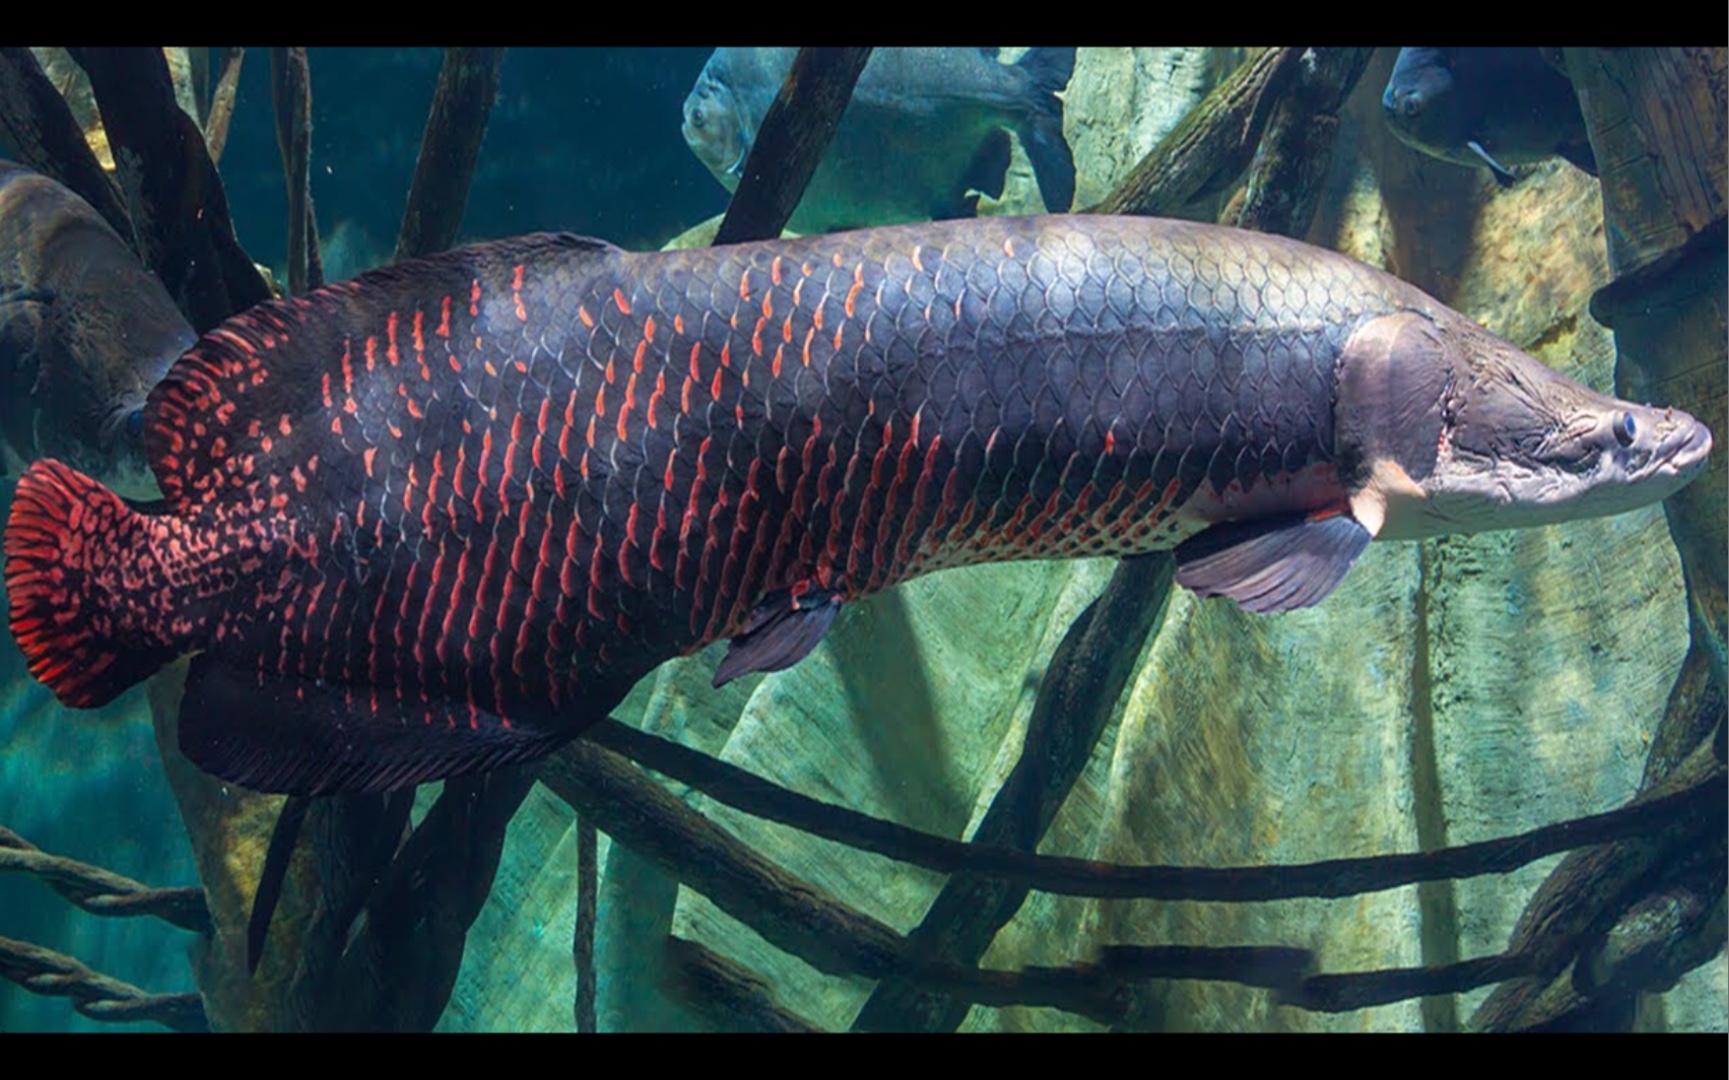 连食人鱼都不敢招惹的鱼类:巨骨舌鱼